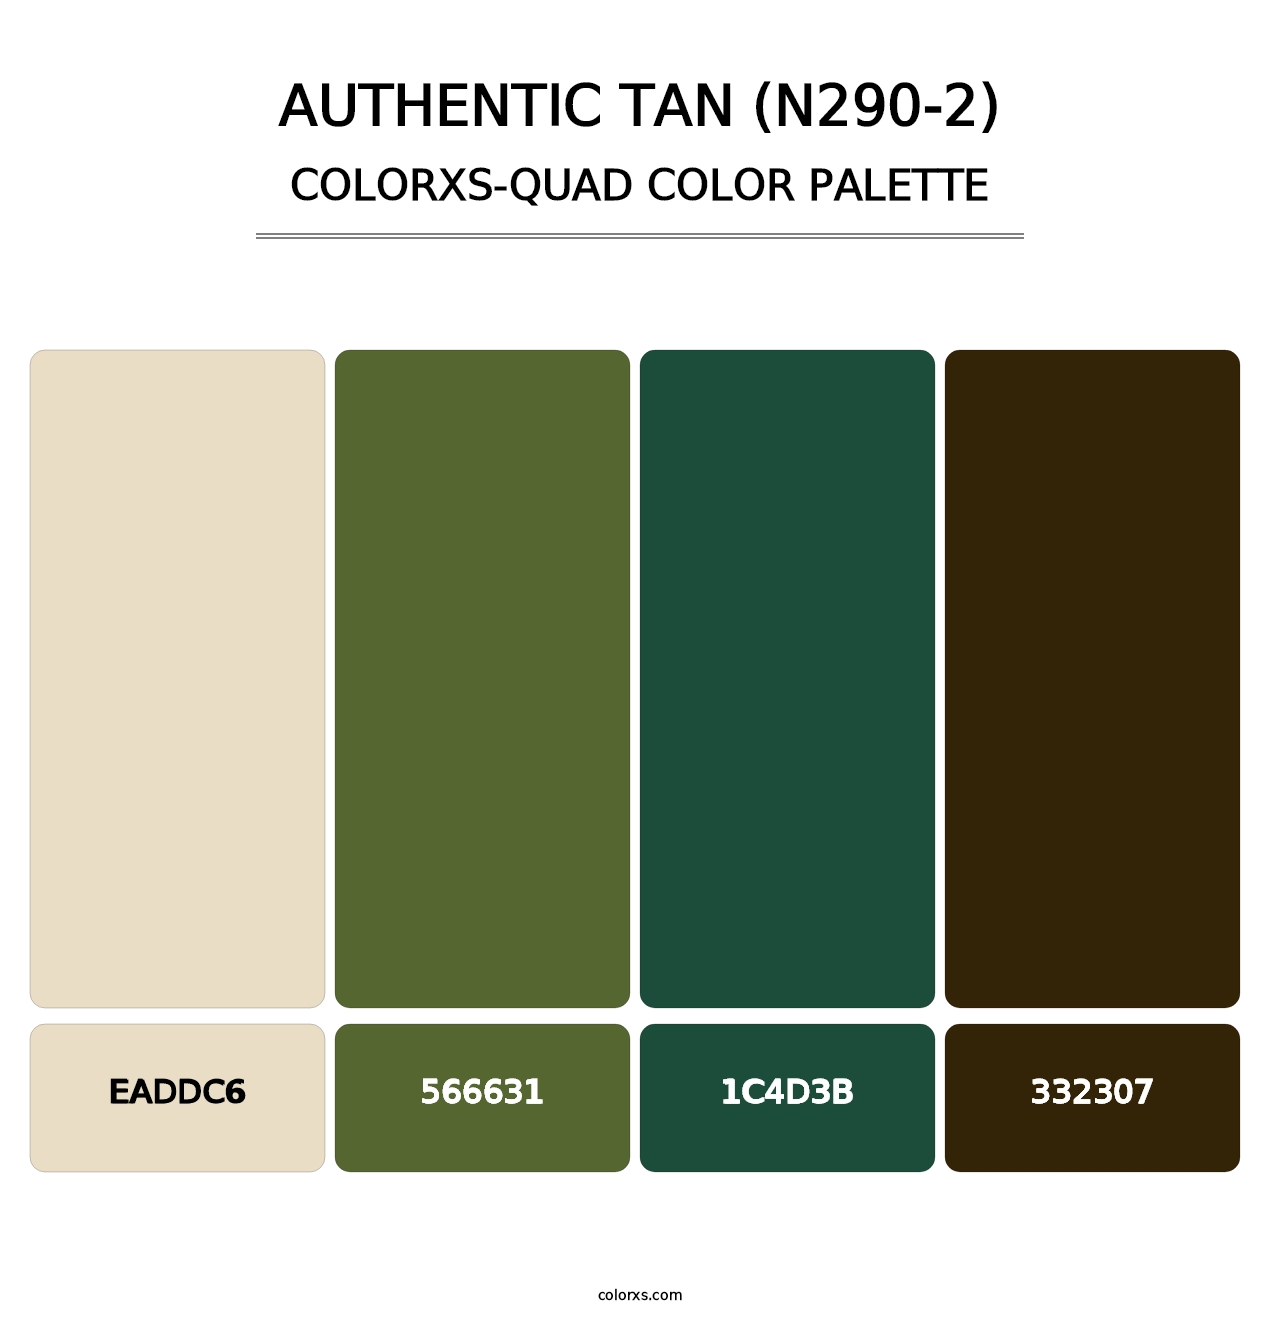 Authentic Tan (N290-2) - Colorxs Quad Palette